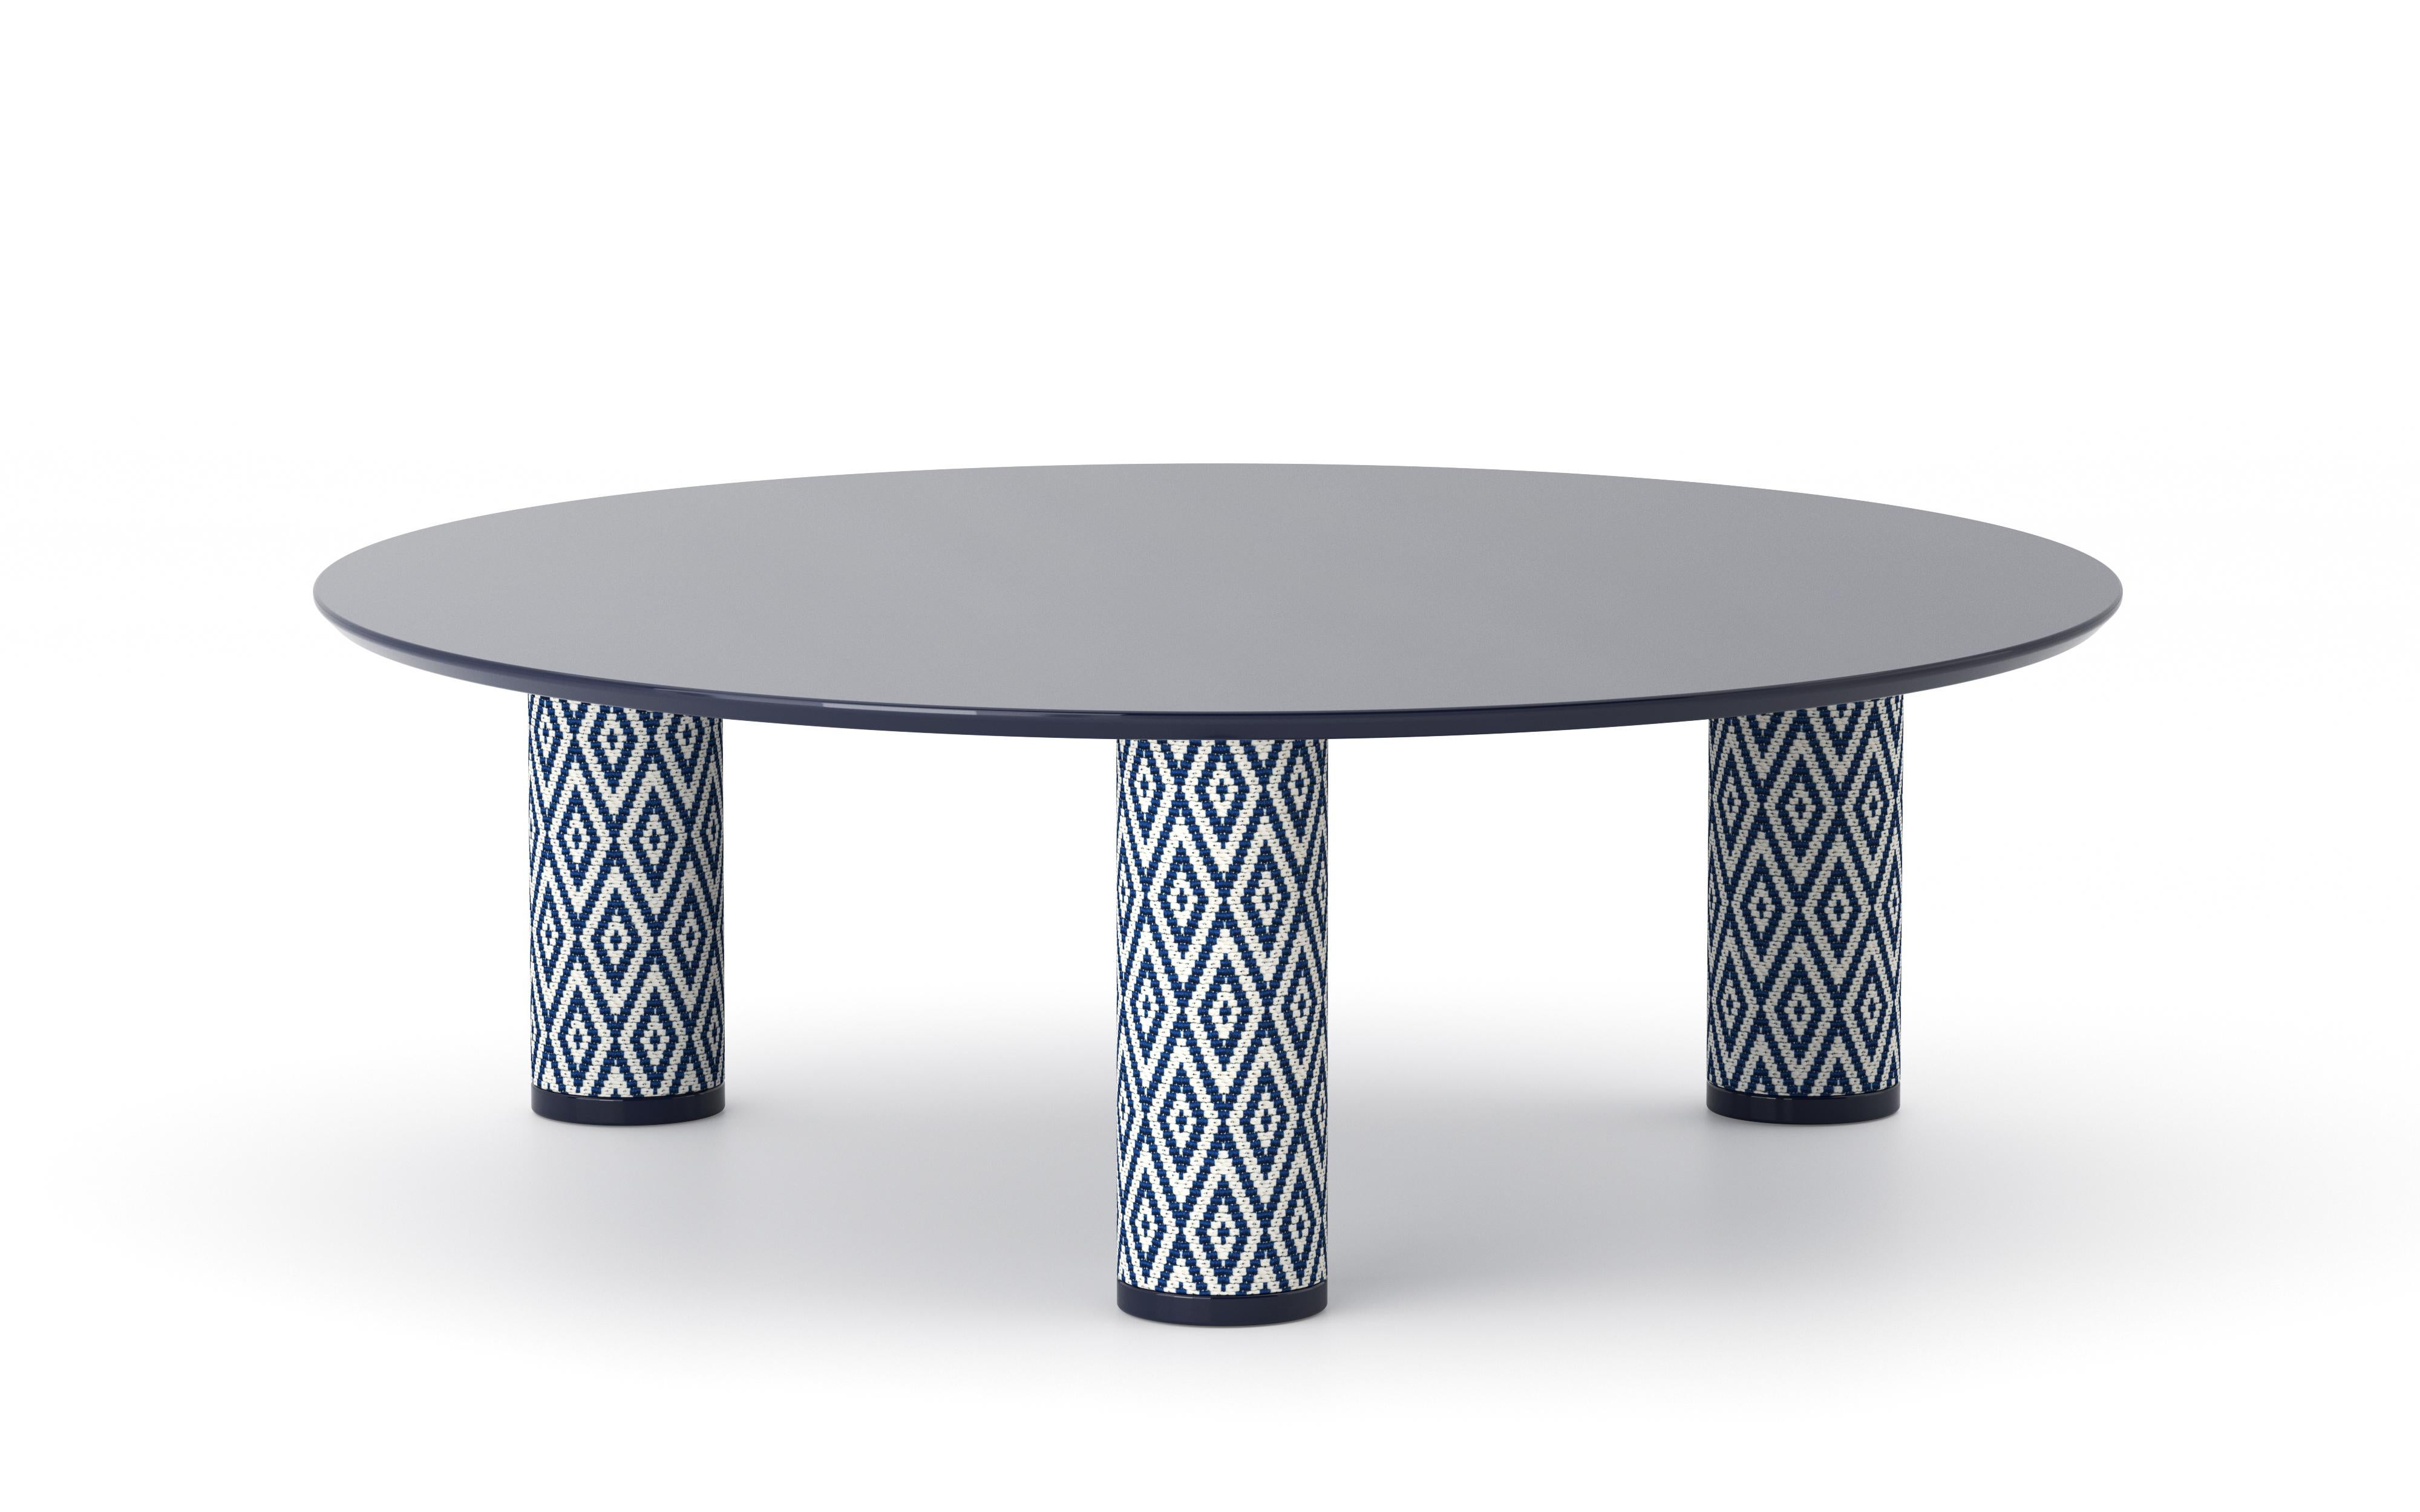 UMA Round 90 est une table basse de la collection du même nom conçue par Ludovica+Roberto Palomba pour P + C Edizioni au printemps 2022.
Dotée d'un plateau circulaire en résine, UMA Round 90 met l'accent sur les pieds cylindriques de la table,